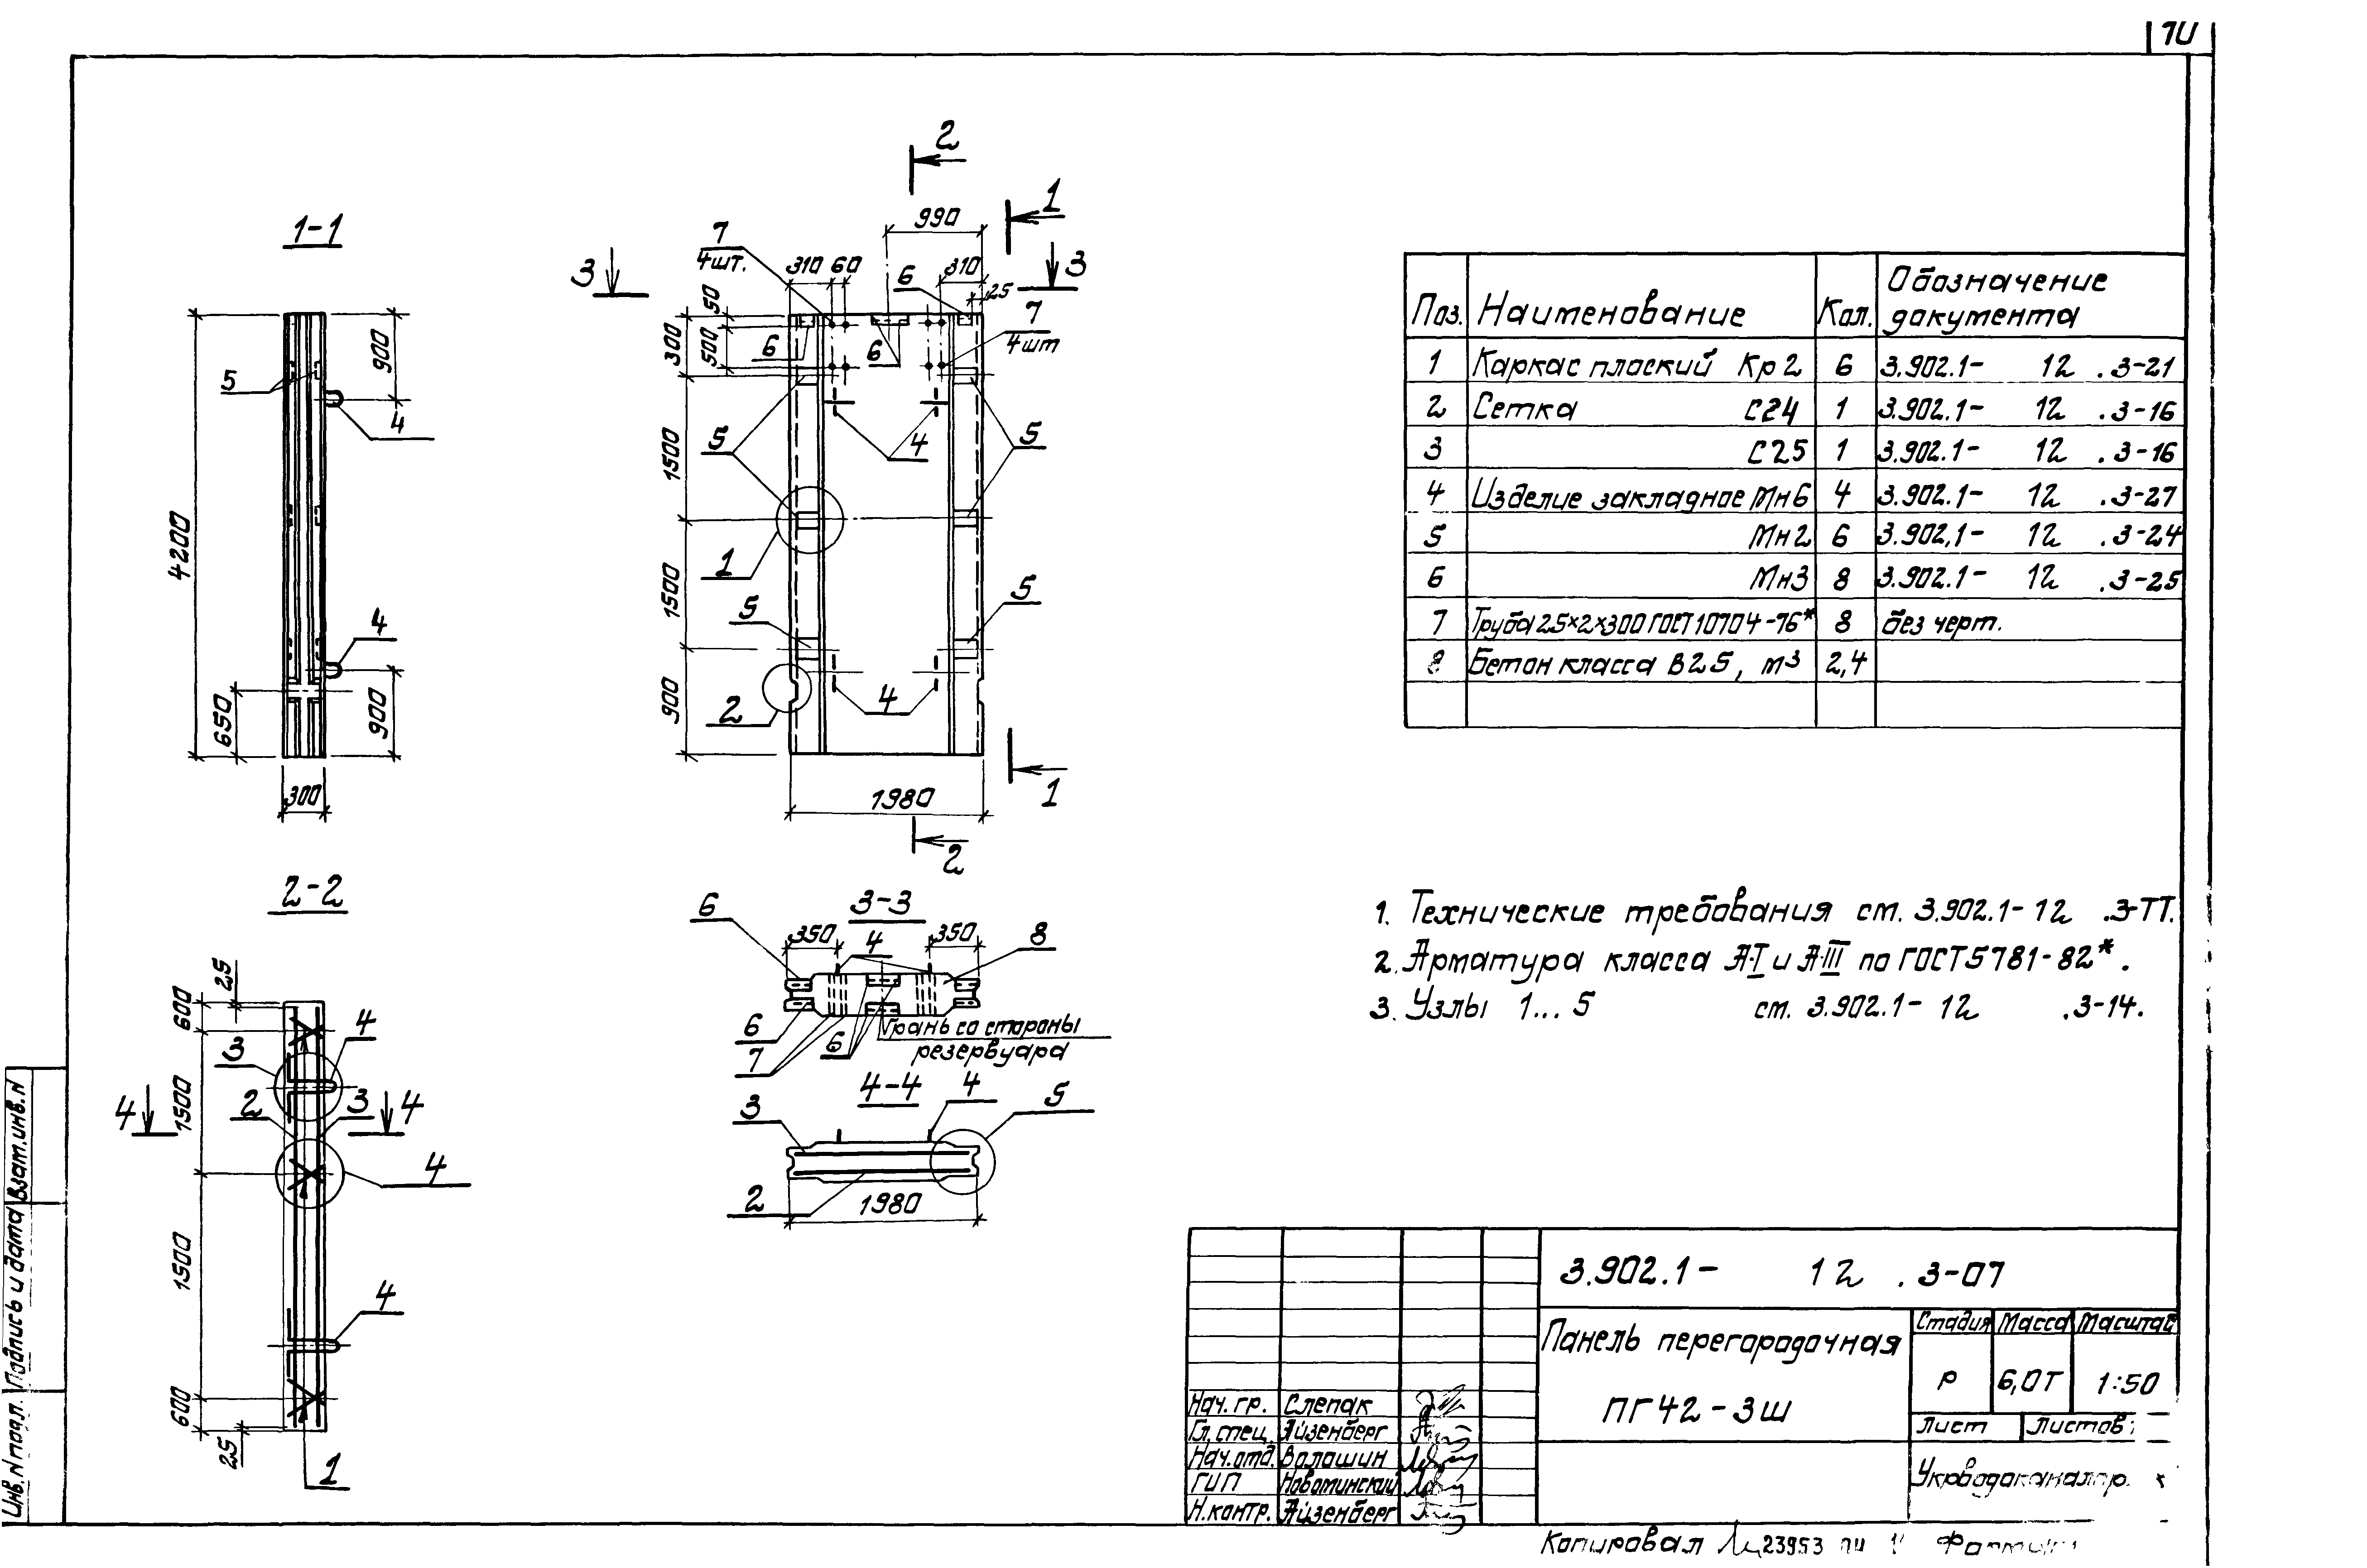 Панель перегородочная ПГ42-3-ш Серия 3.902.1-12, вып.3